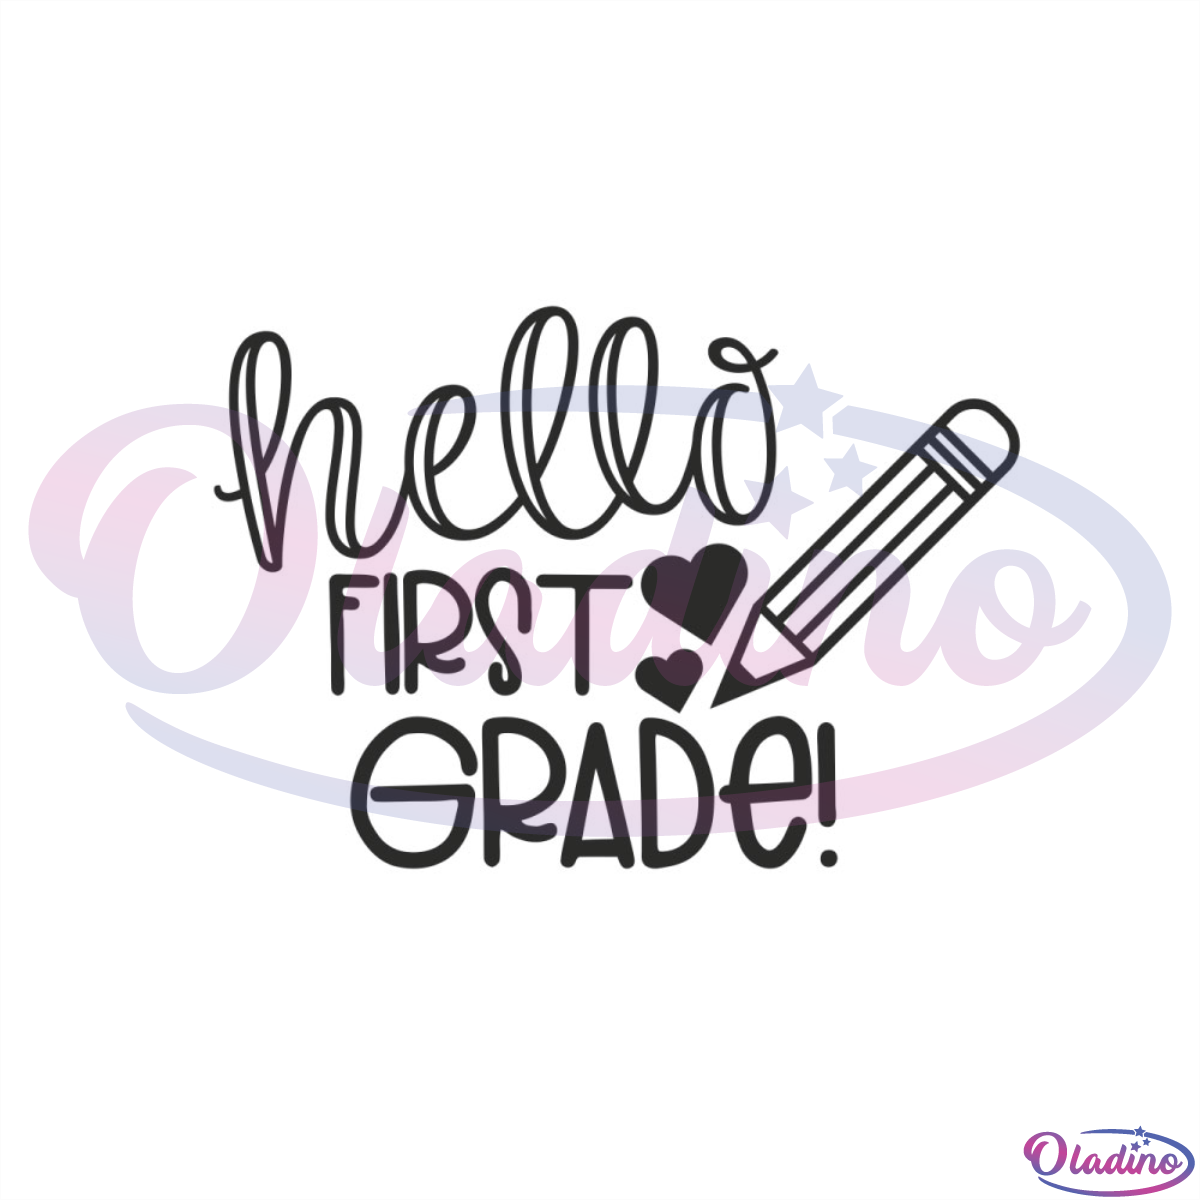 Hello first grade SVG Digital File, first grade SVG, pencil SVG